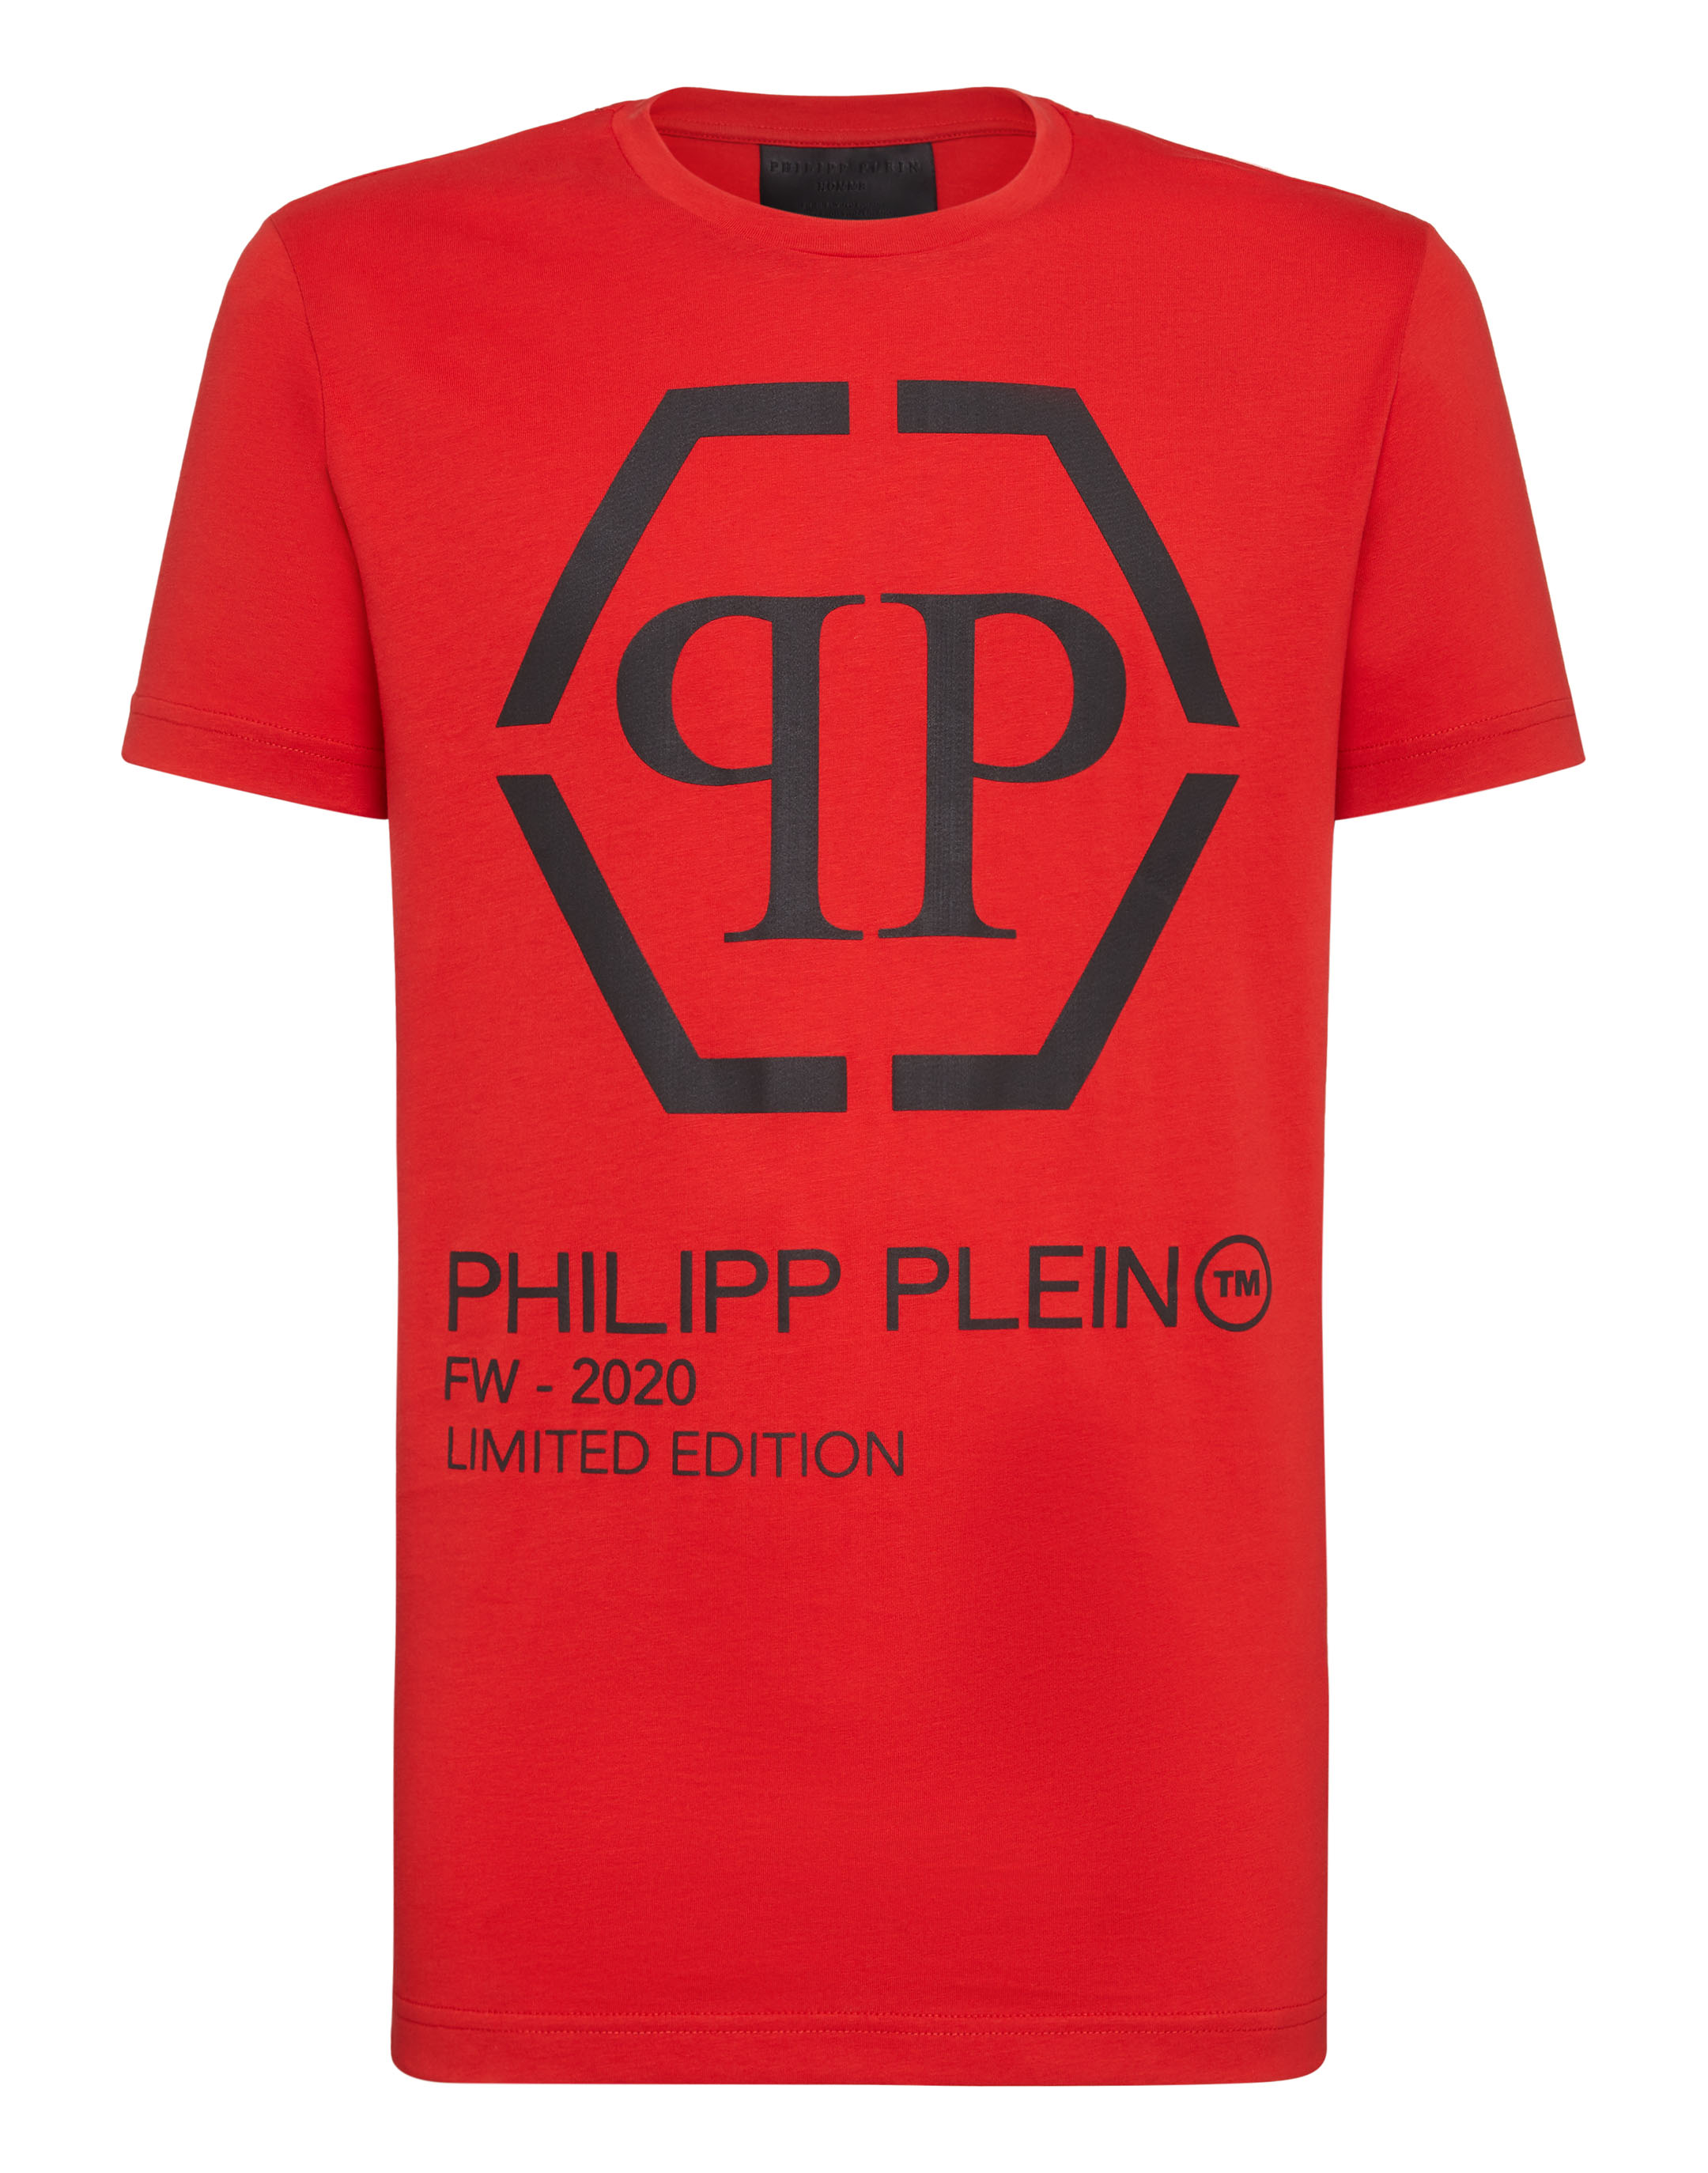 philipp plein red